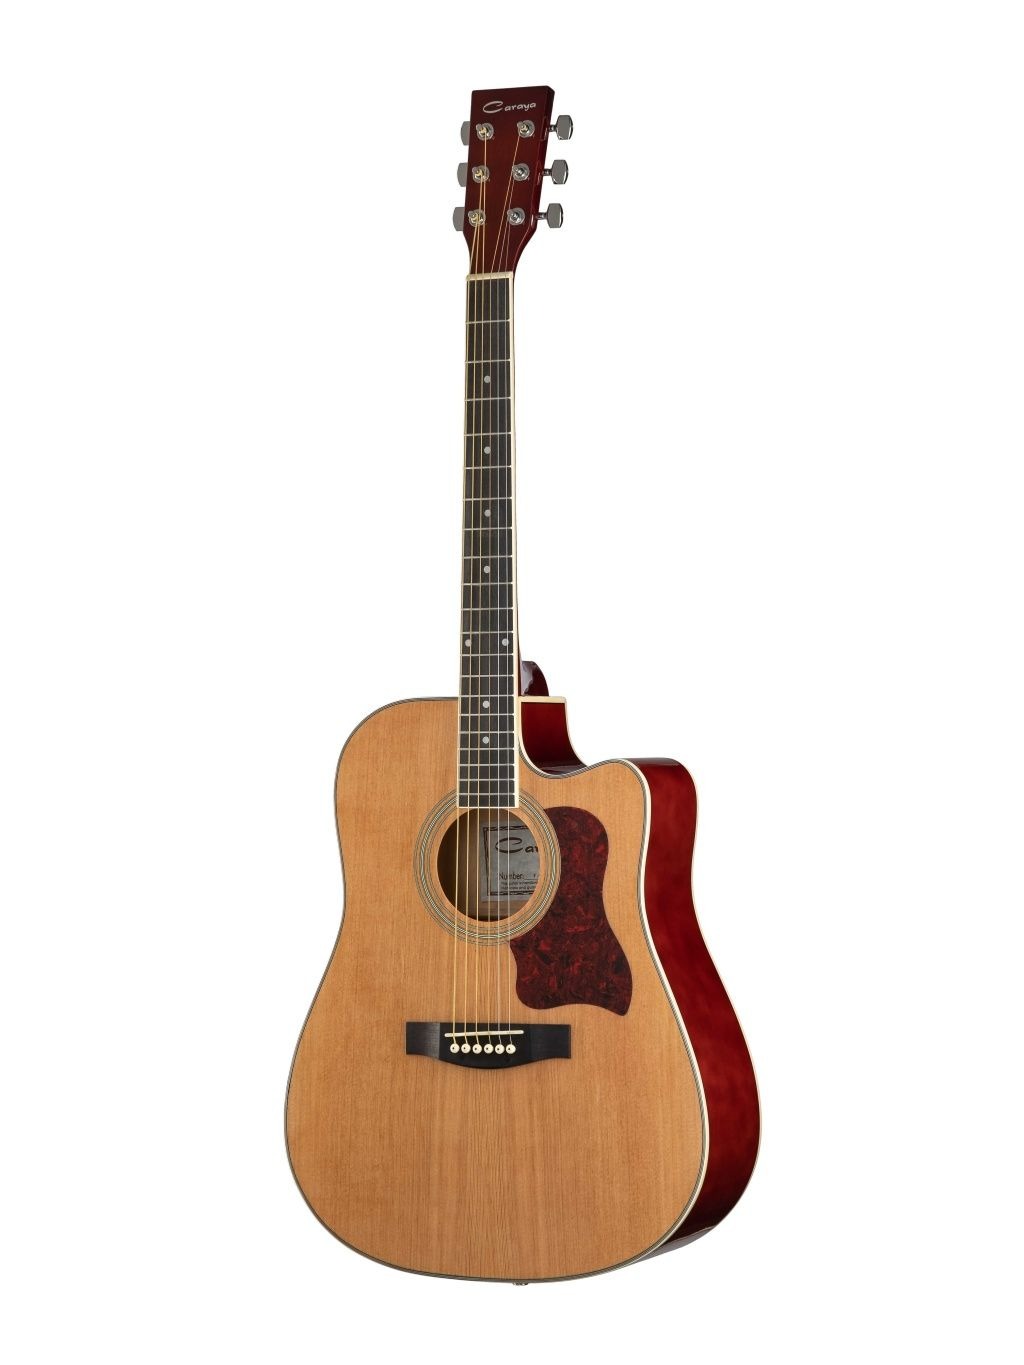 Акустические гитары Caraya F641-N гитара акустическая дерево 97см с вырезом